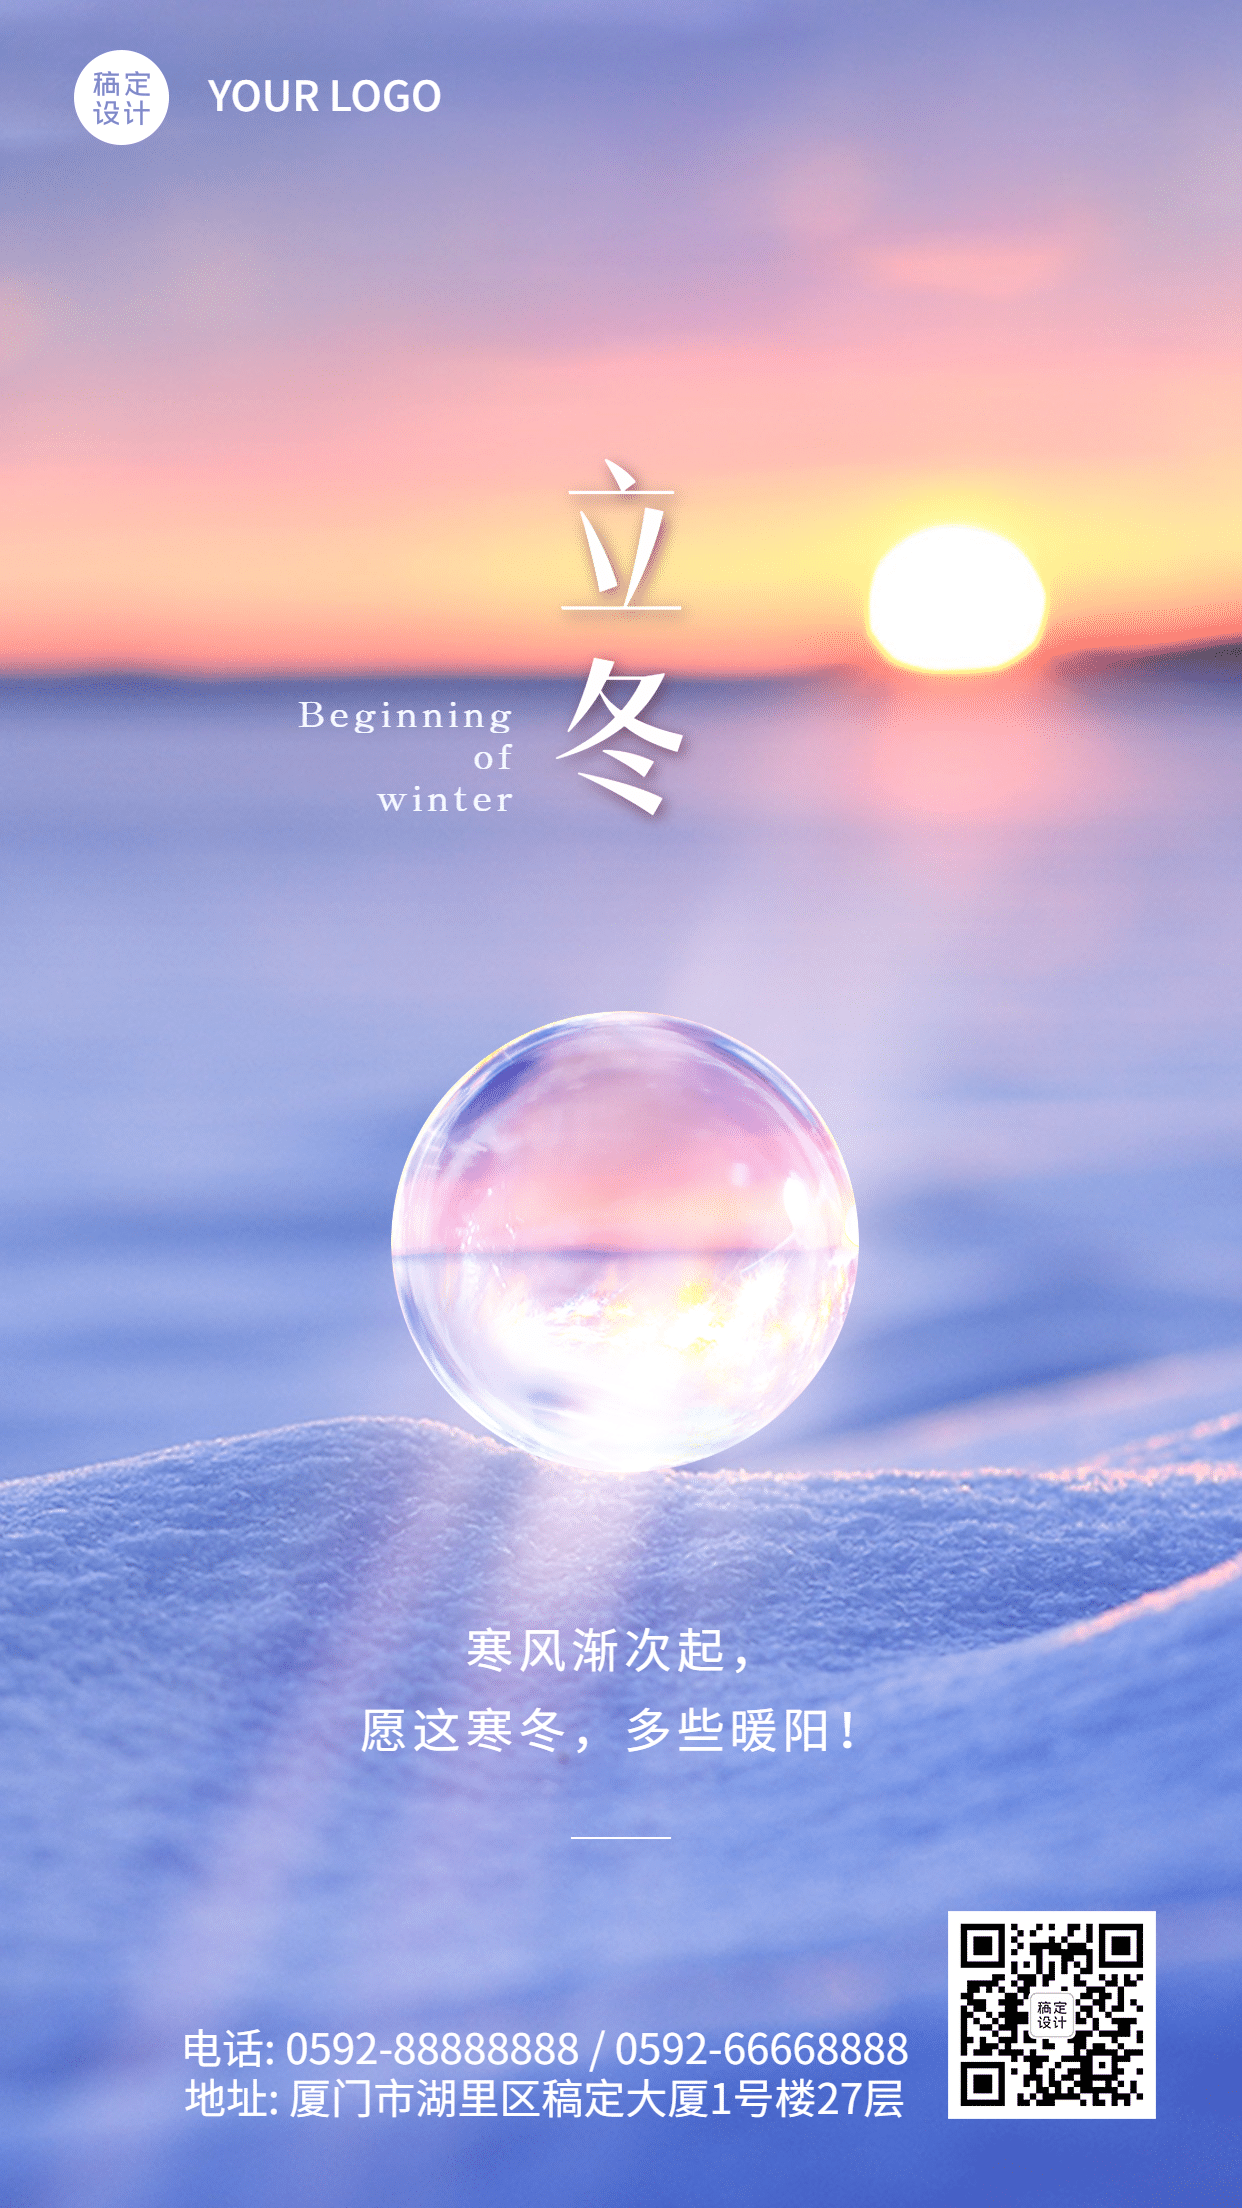 立冬节气冬日暖阳球体合成祝福海报预览效果